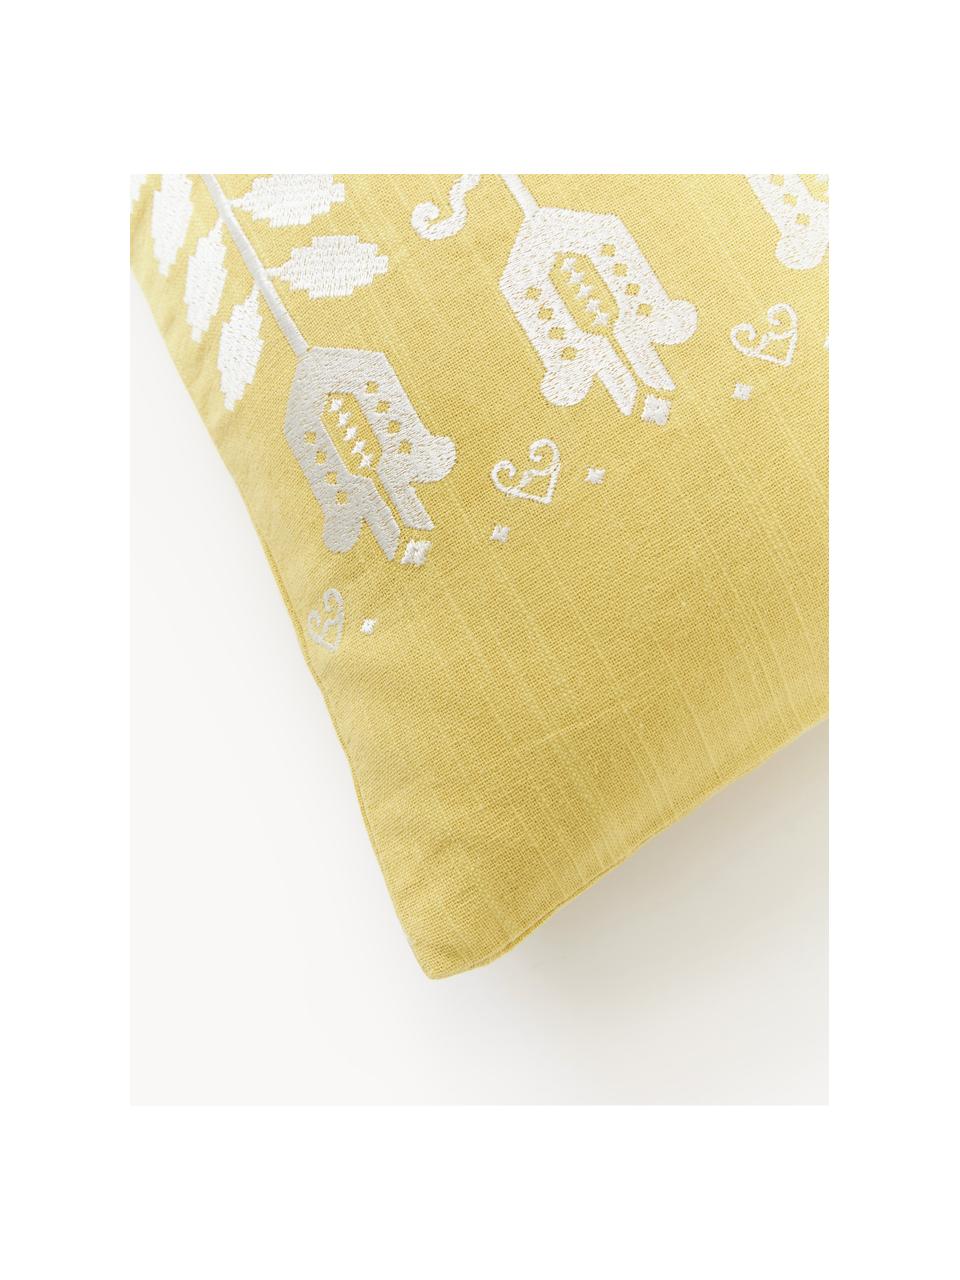 Poszewka na poduszkę z bawełny Jemima, Cytrynowy żółty, S 45 x D 45 cm